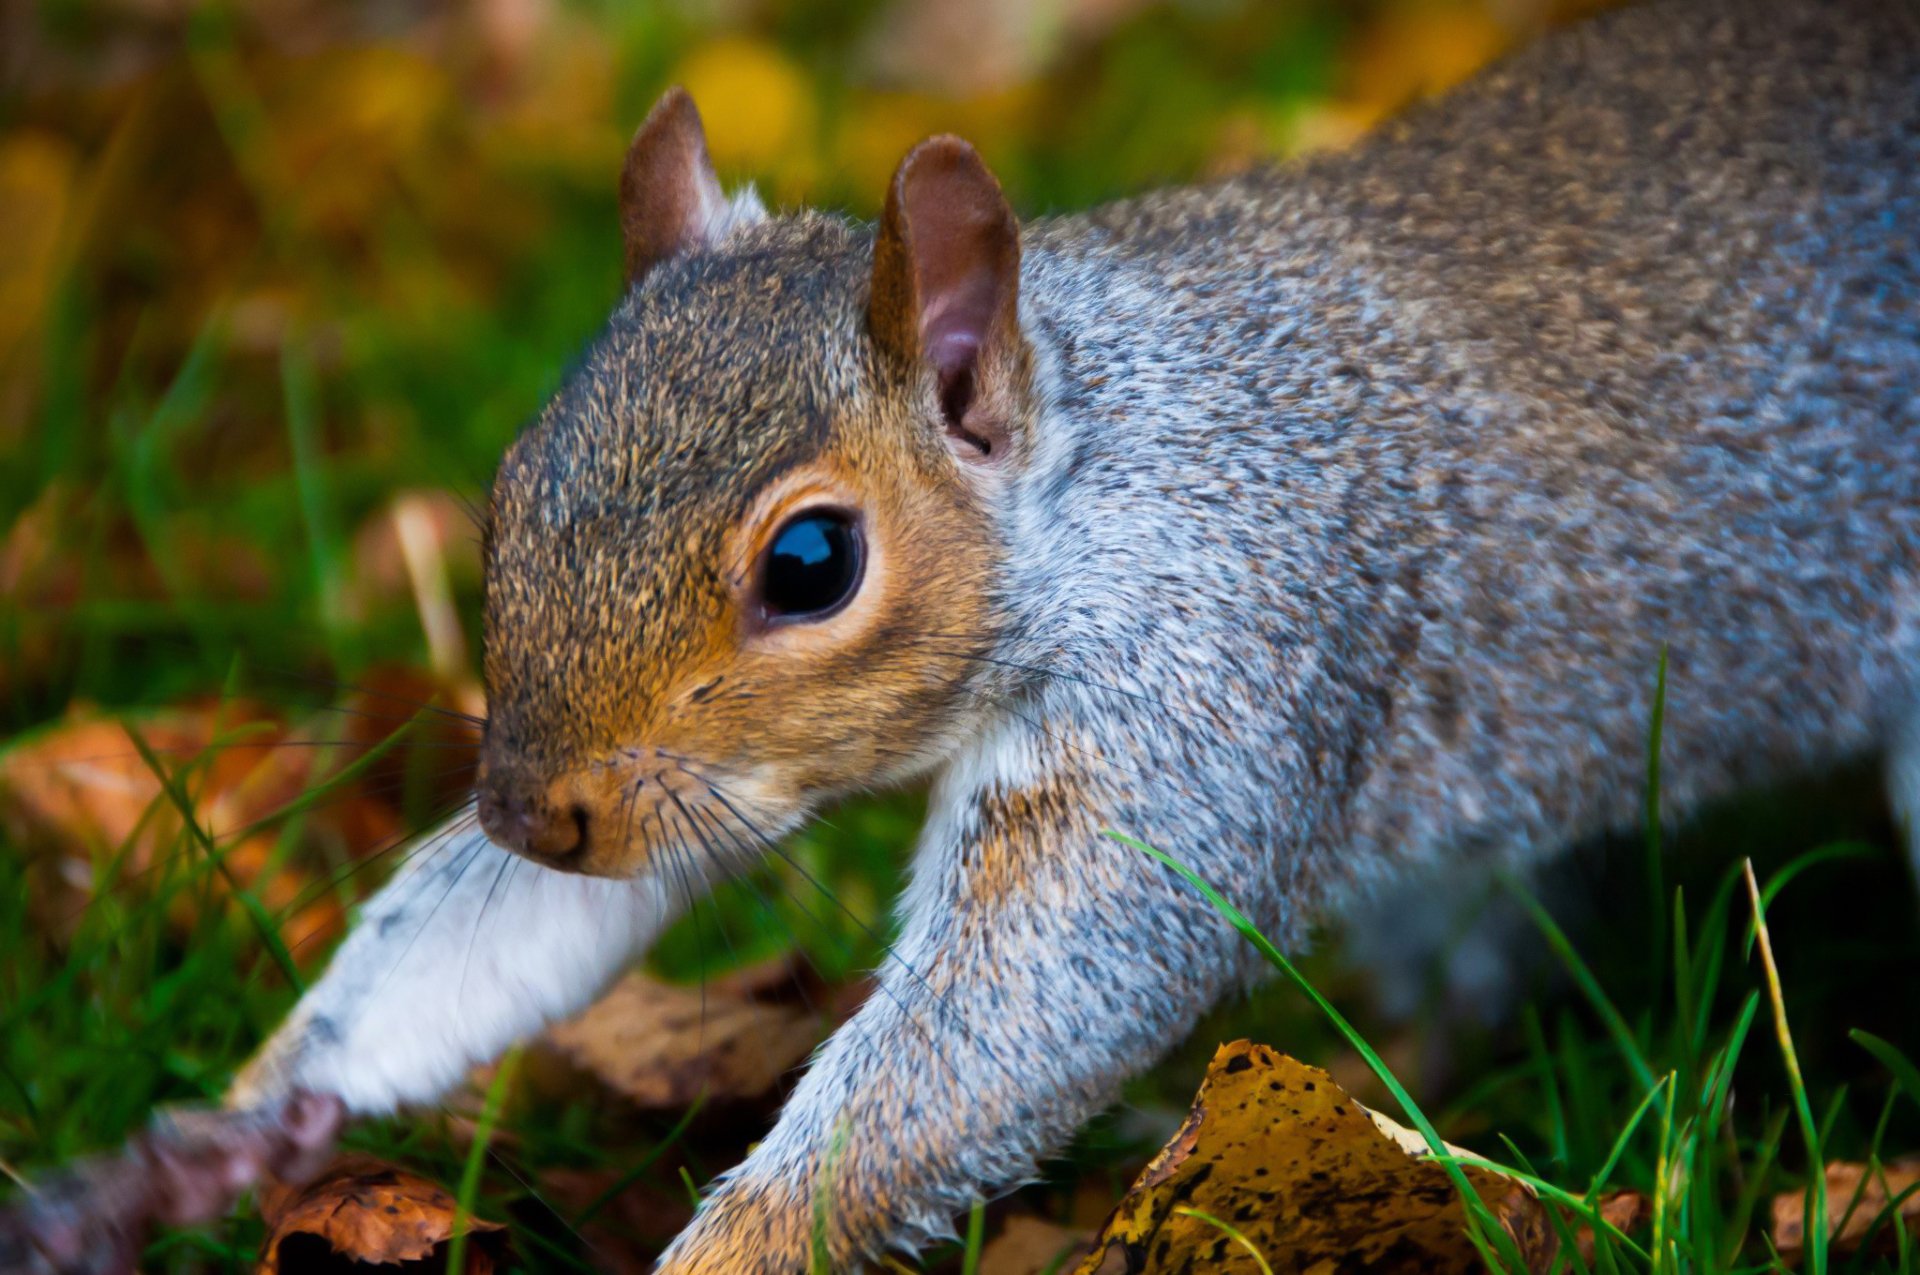 Hyde Park Squirrel 2 by BubbaTheGecko